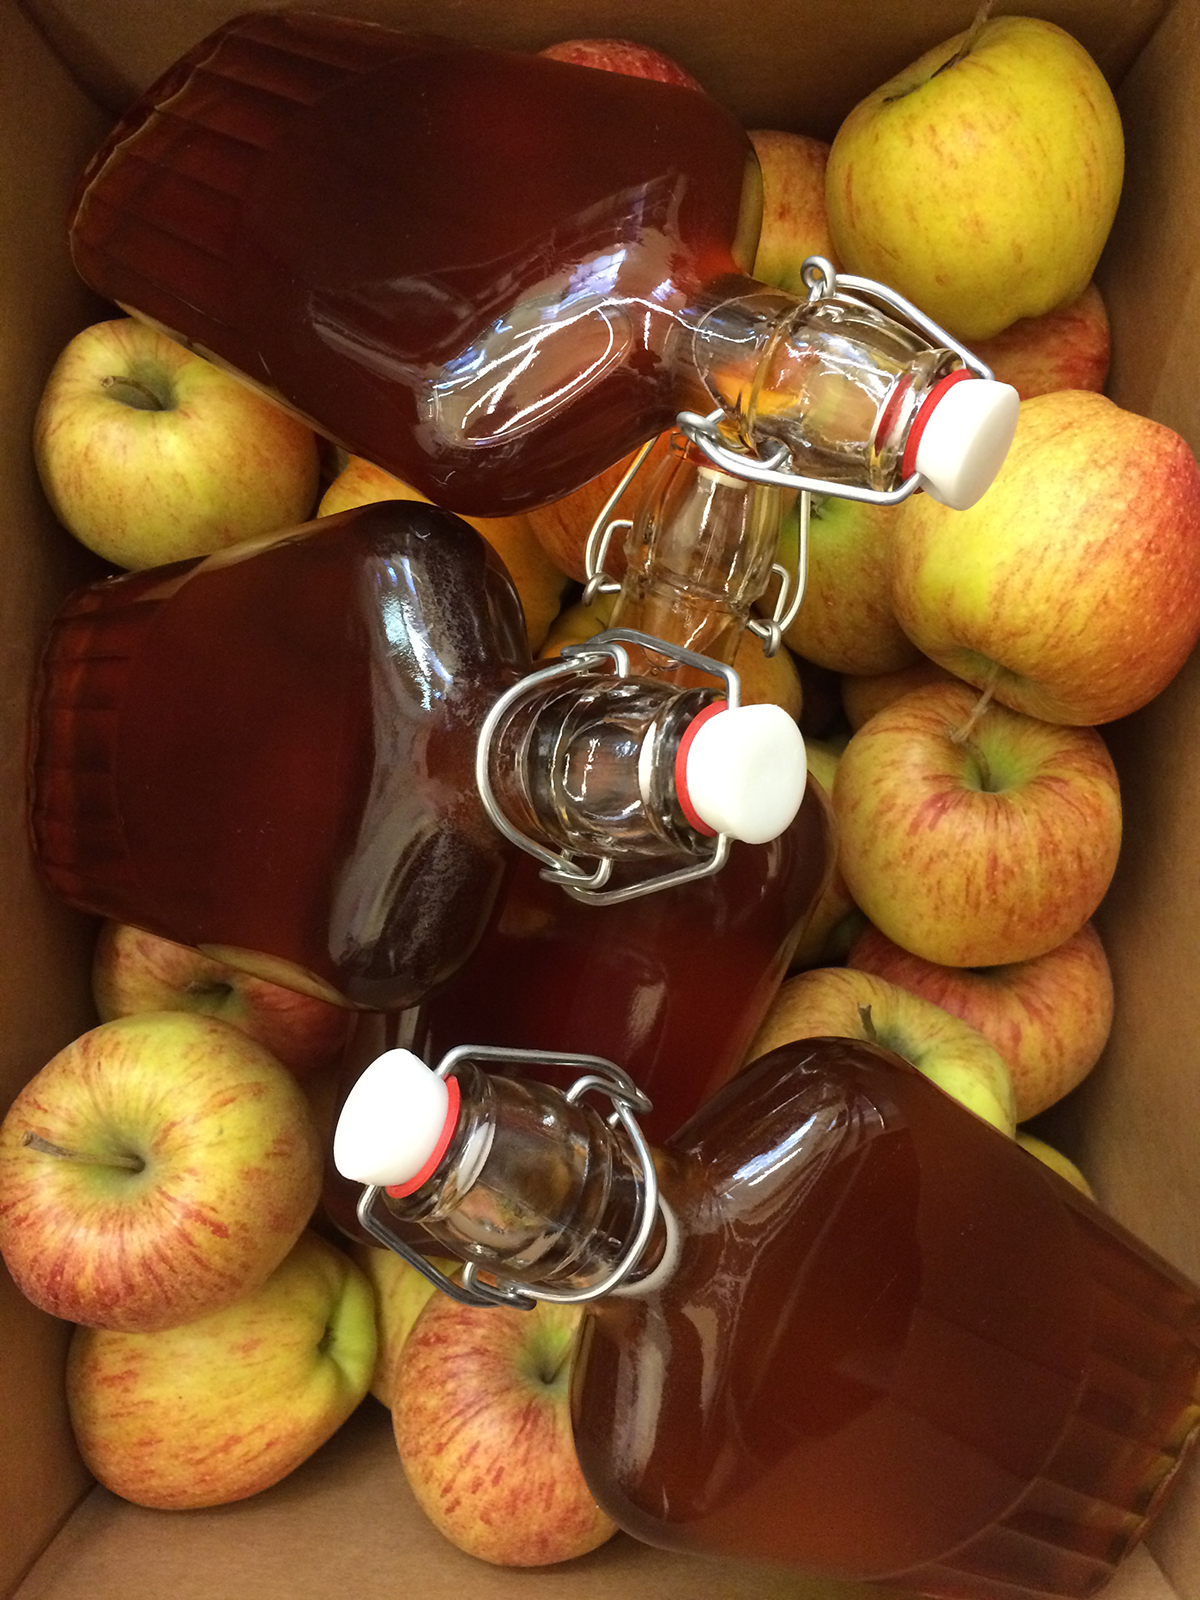 Bottles of house-made applejack